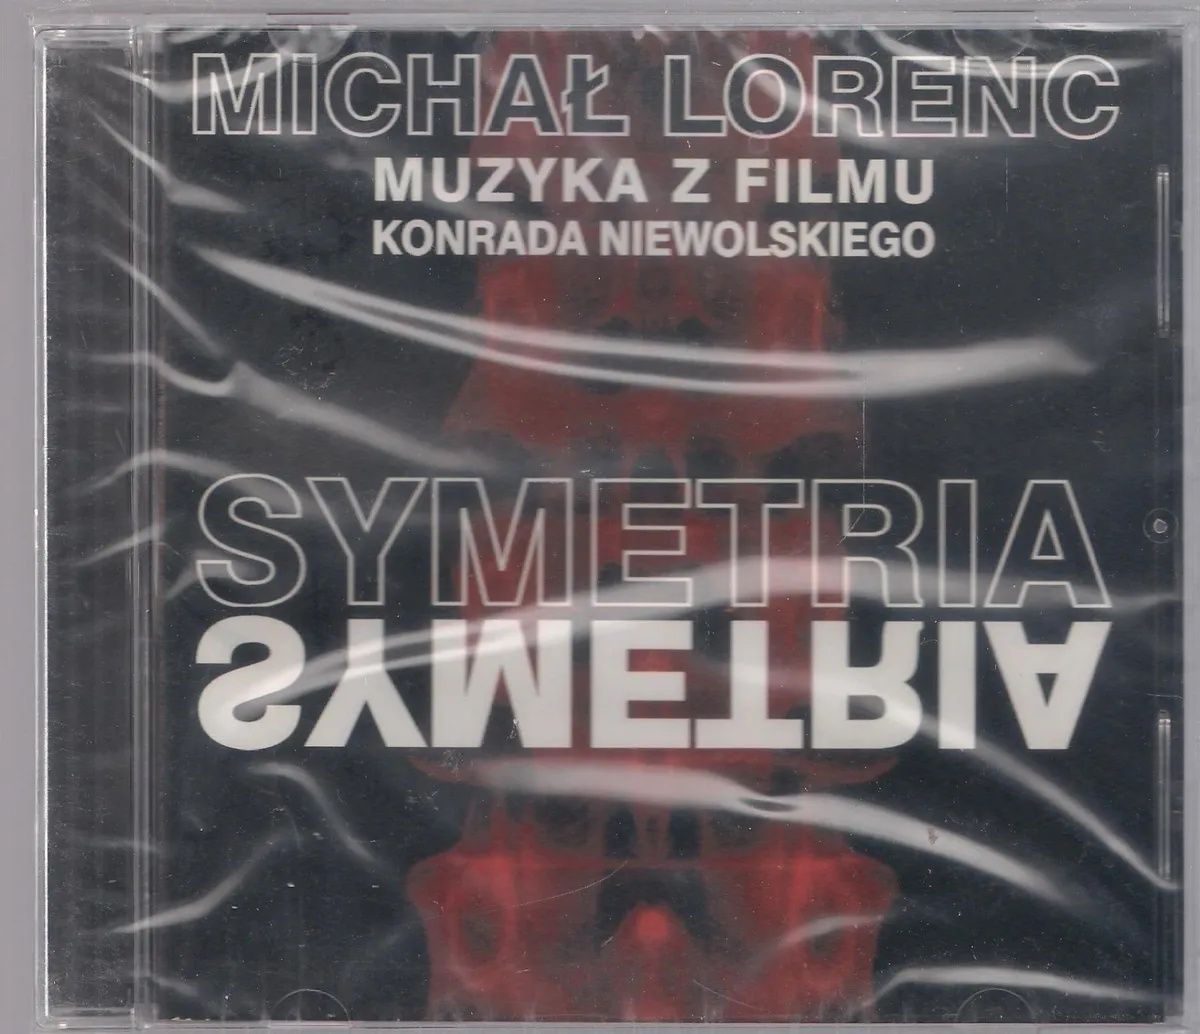 Michał Lorenc muzyka do filmu Symetria OST folia